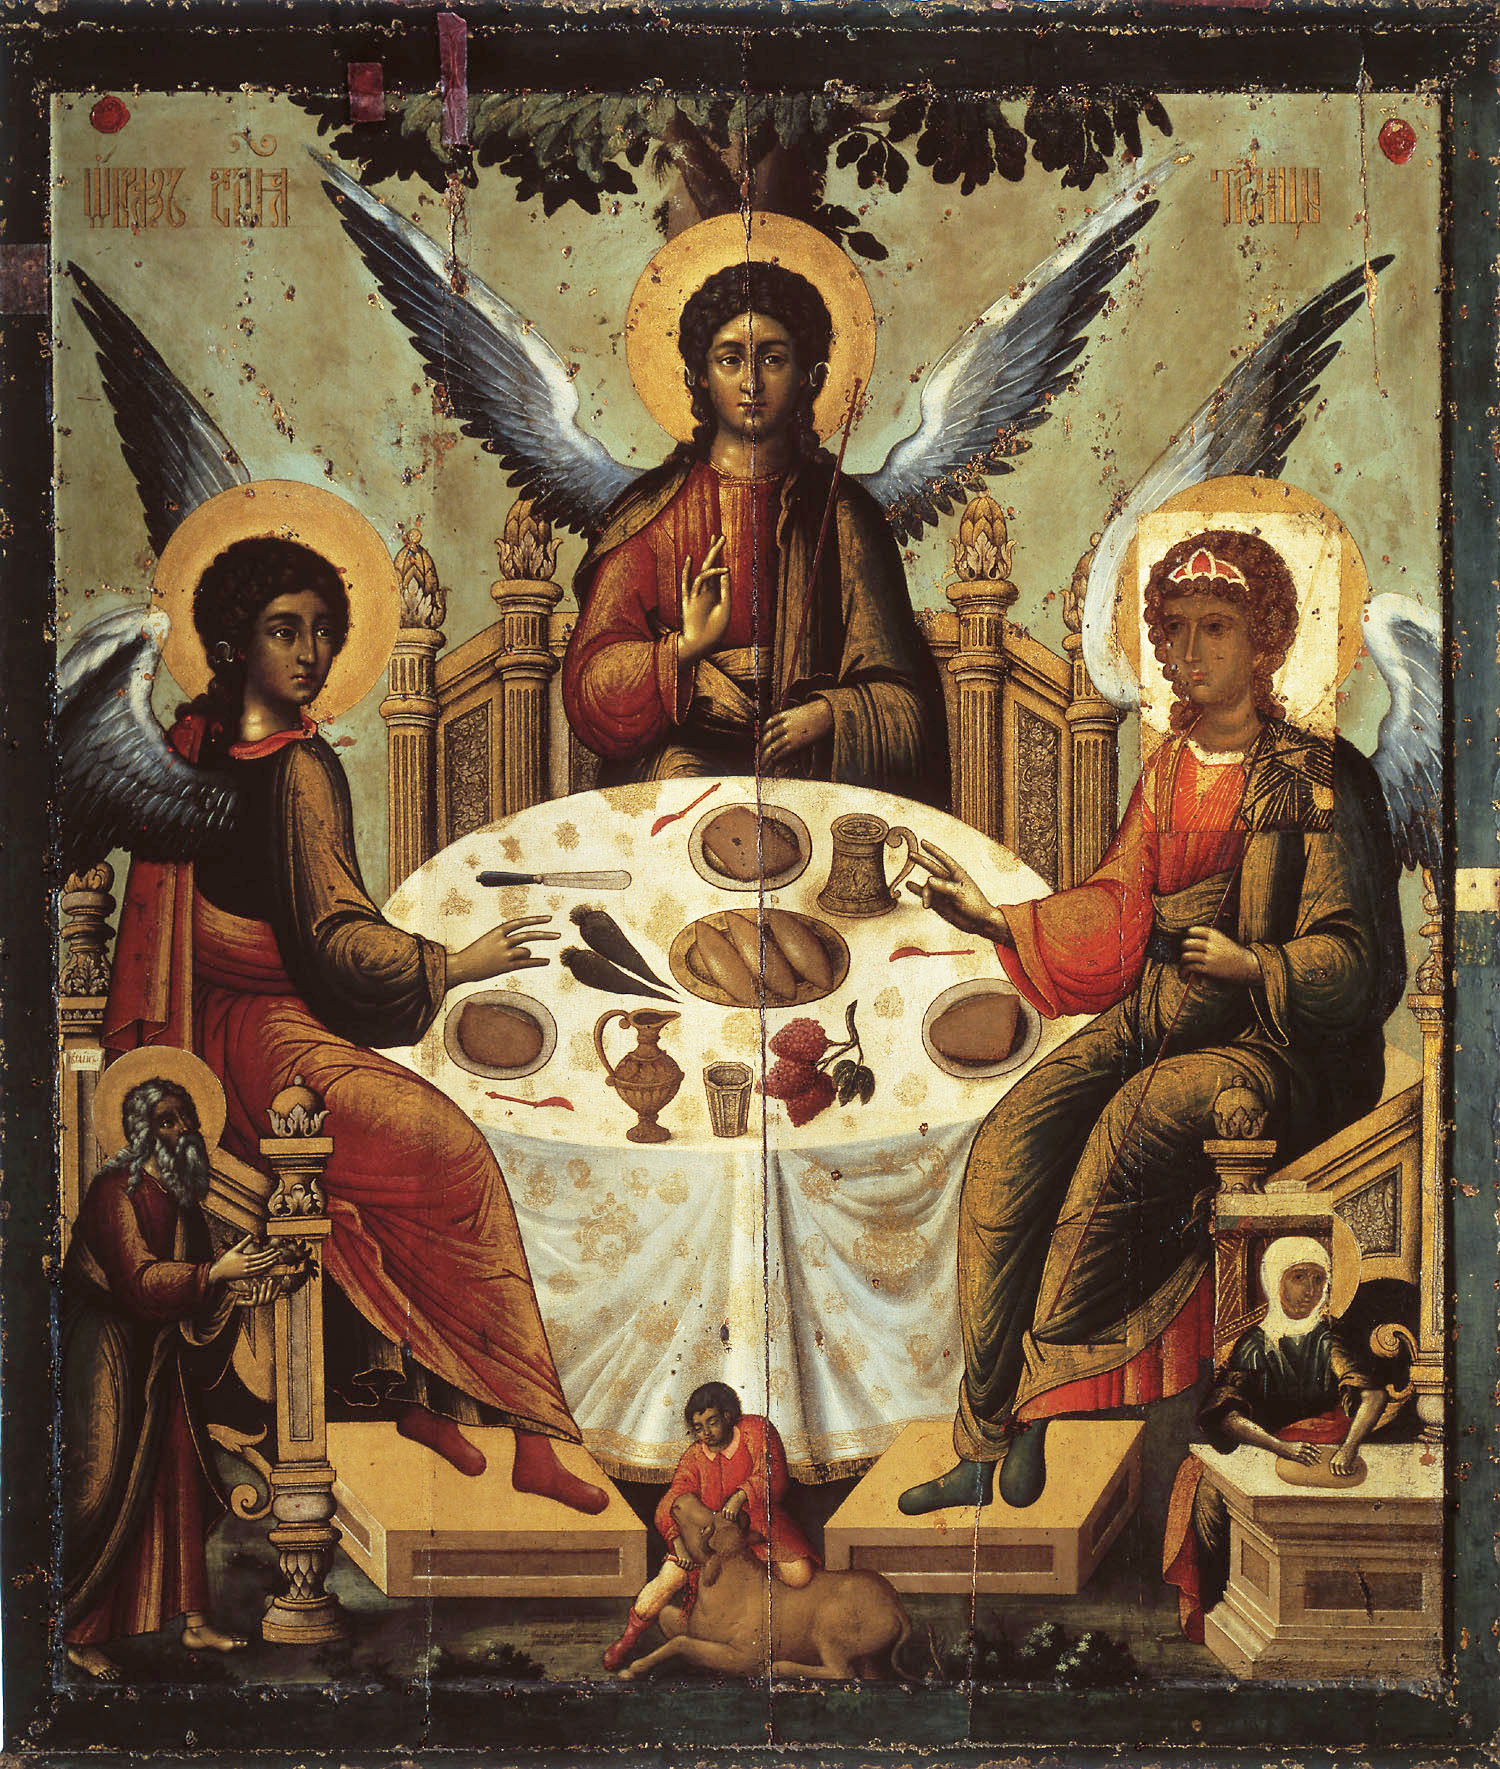 Святая Троица. Икона середины 14 века Успенского собора Московского Кремля. Была полностью поновлена Тихоном Филатьевым в 1700